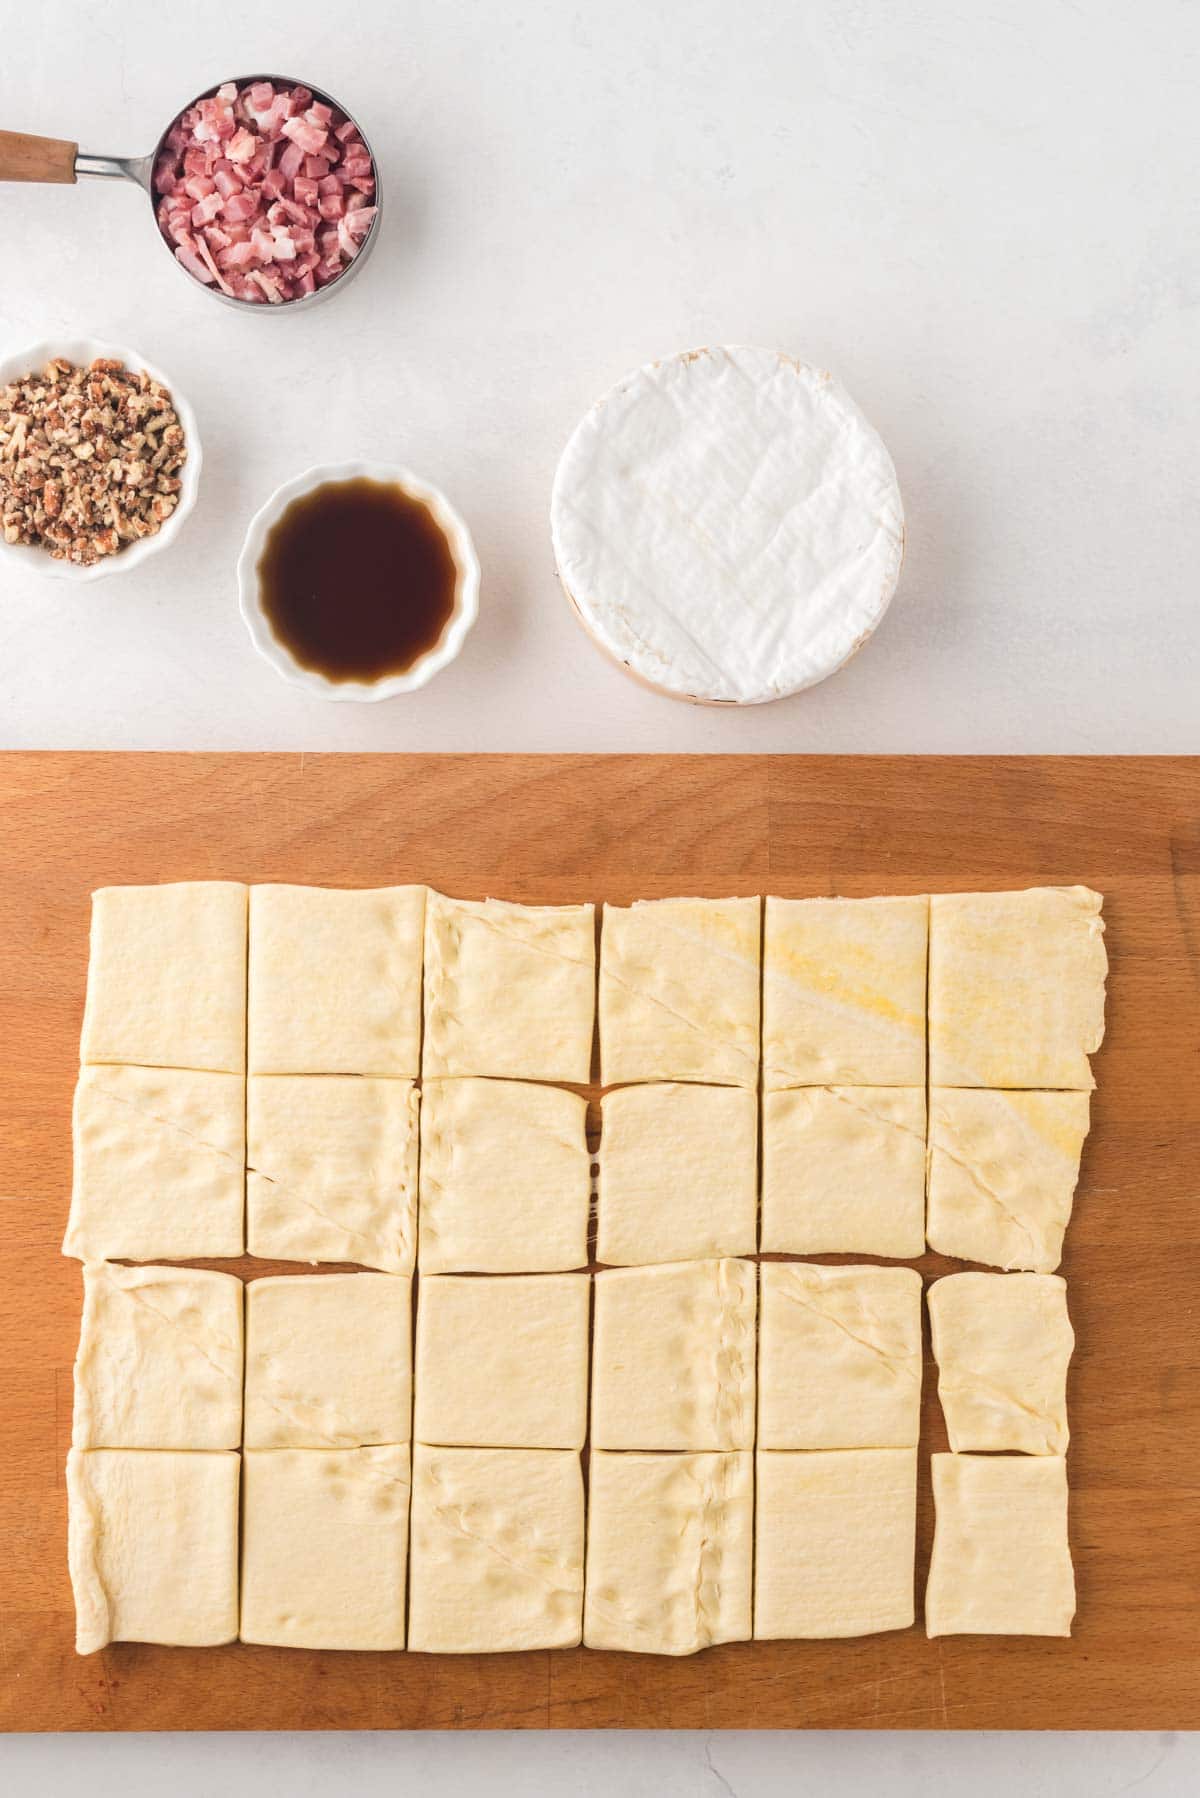 Crescent roll dough cut into 24 squares